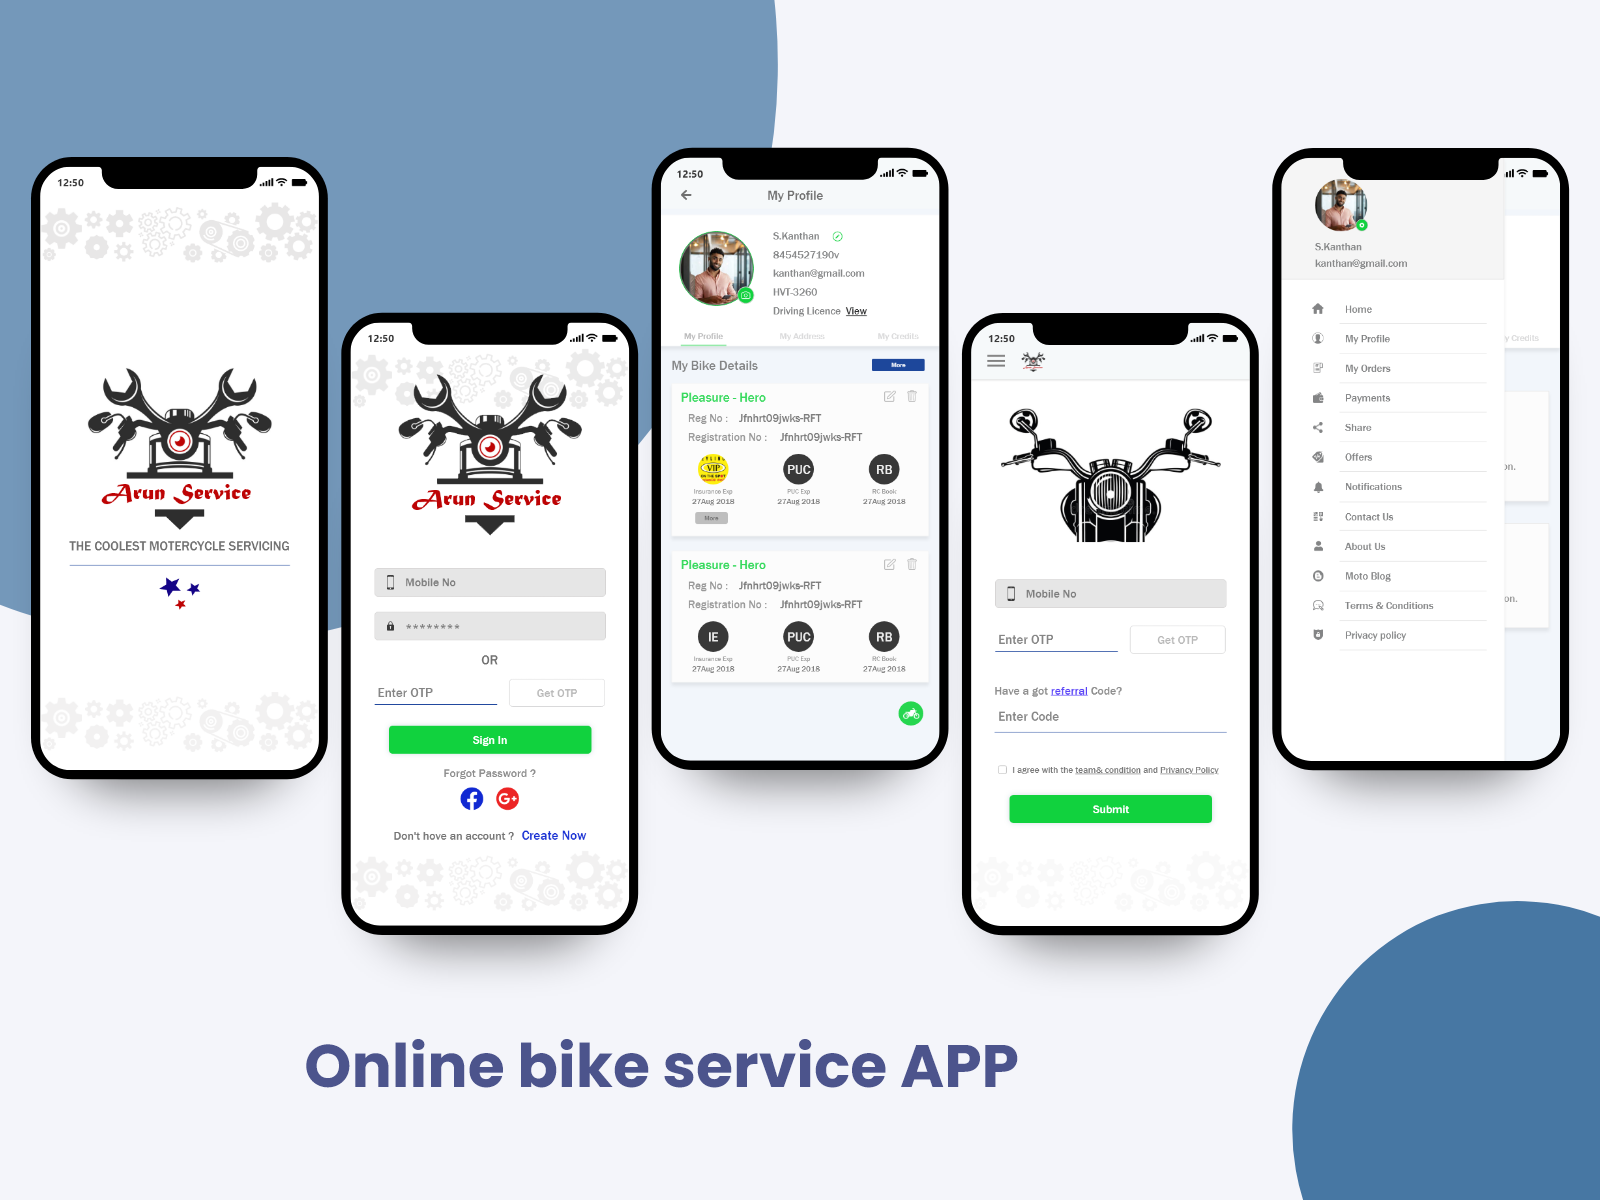 Online bike service booking app by Thenujan thenu on Dribbble